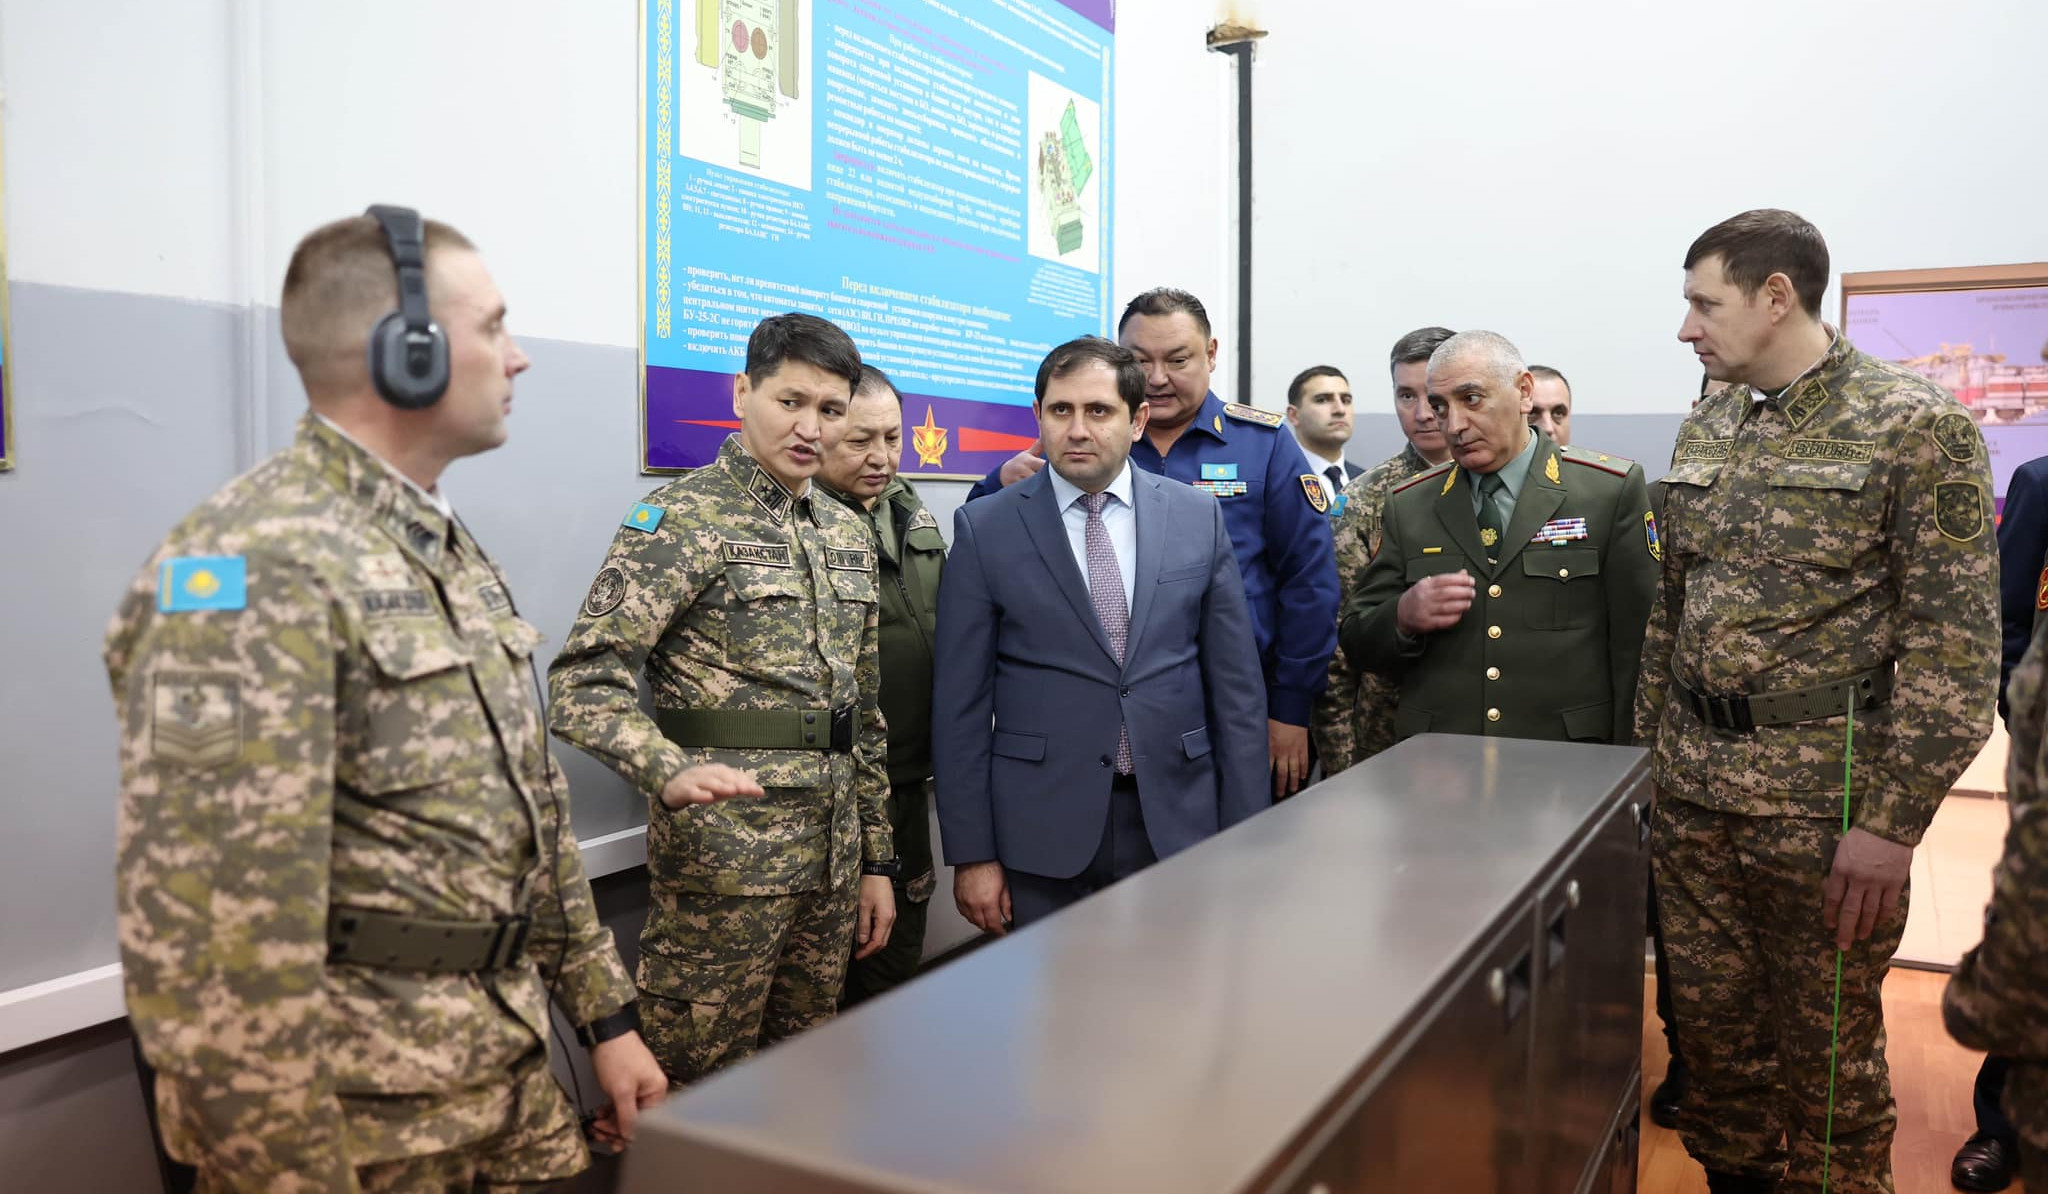 Պայմանավորվածություն է ձեռք բերվել Ղազախստանի ռազմական քոլեջի և ՀՀ ՊՆ-ի սերժանտների պատրաստության կենտրոնի միջև համագործակցությունը զարգացնել